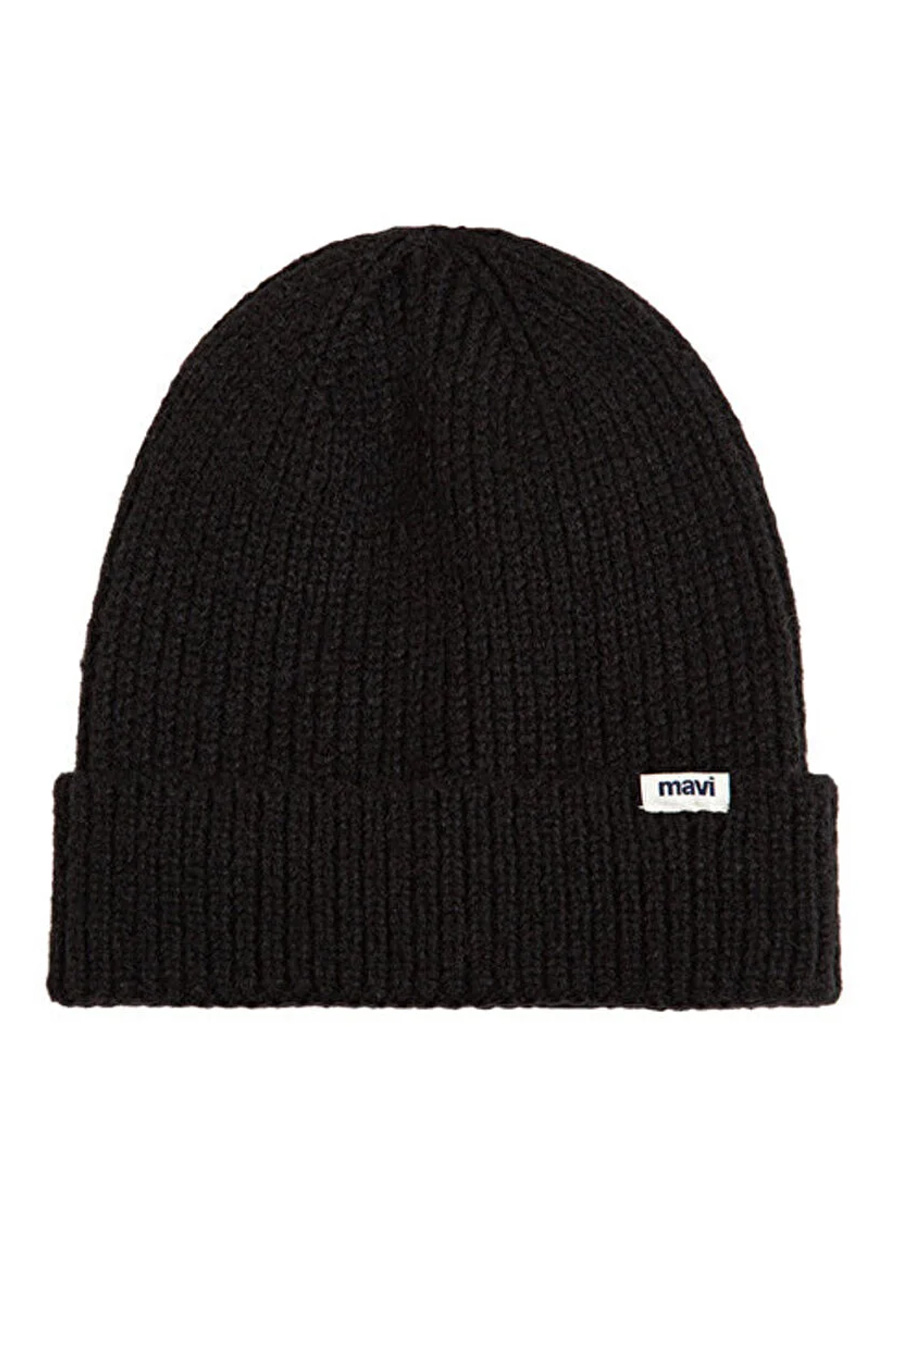 Žieminė kepurė MAVI 1910719-900